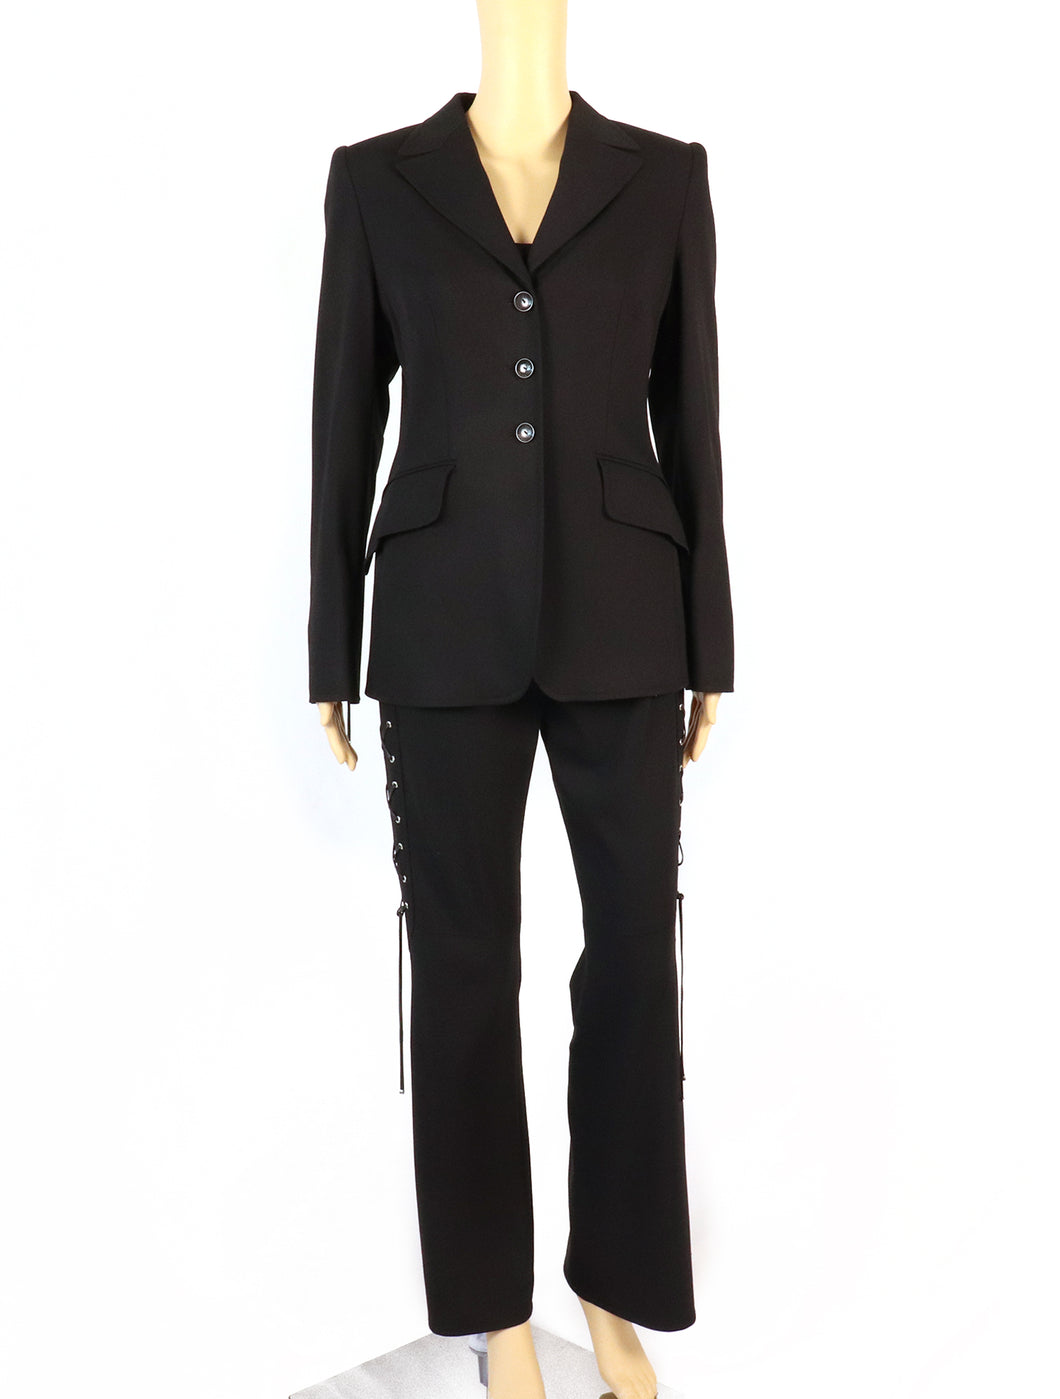 Escada Lace-Up Black Jacket & Pants Suit